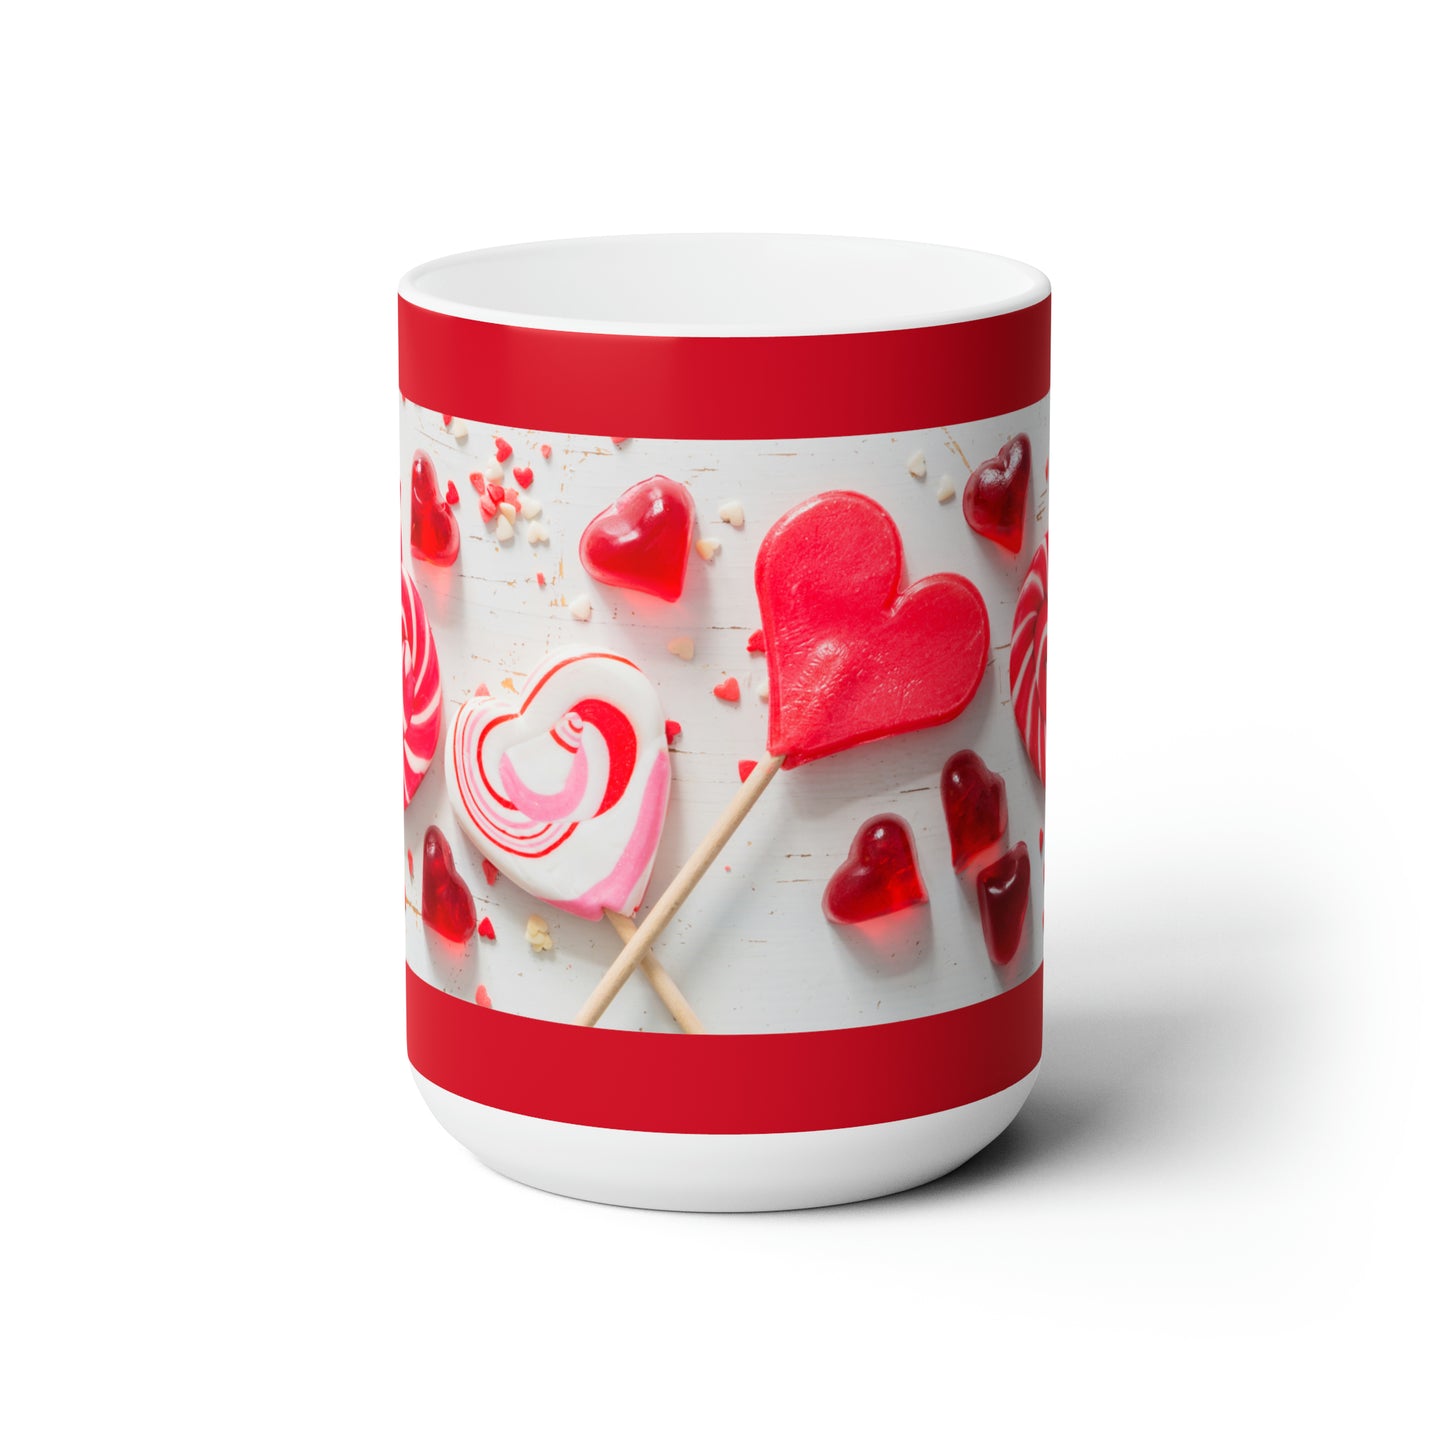 Lollipop Hearts Ceramic Mug, Large Size 15oz, Microwave Safe and Dishwasher Safe